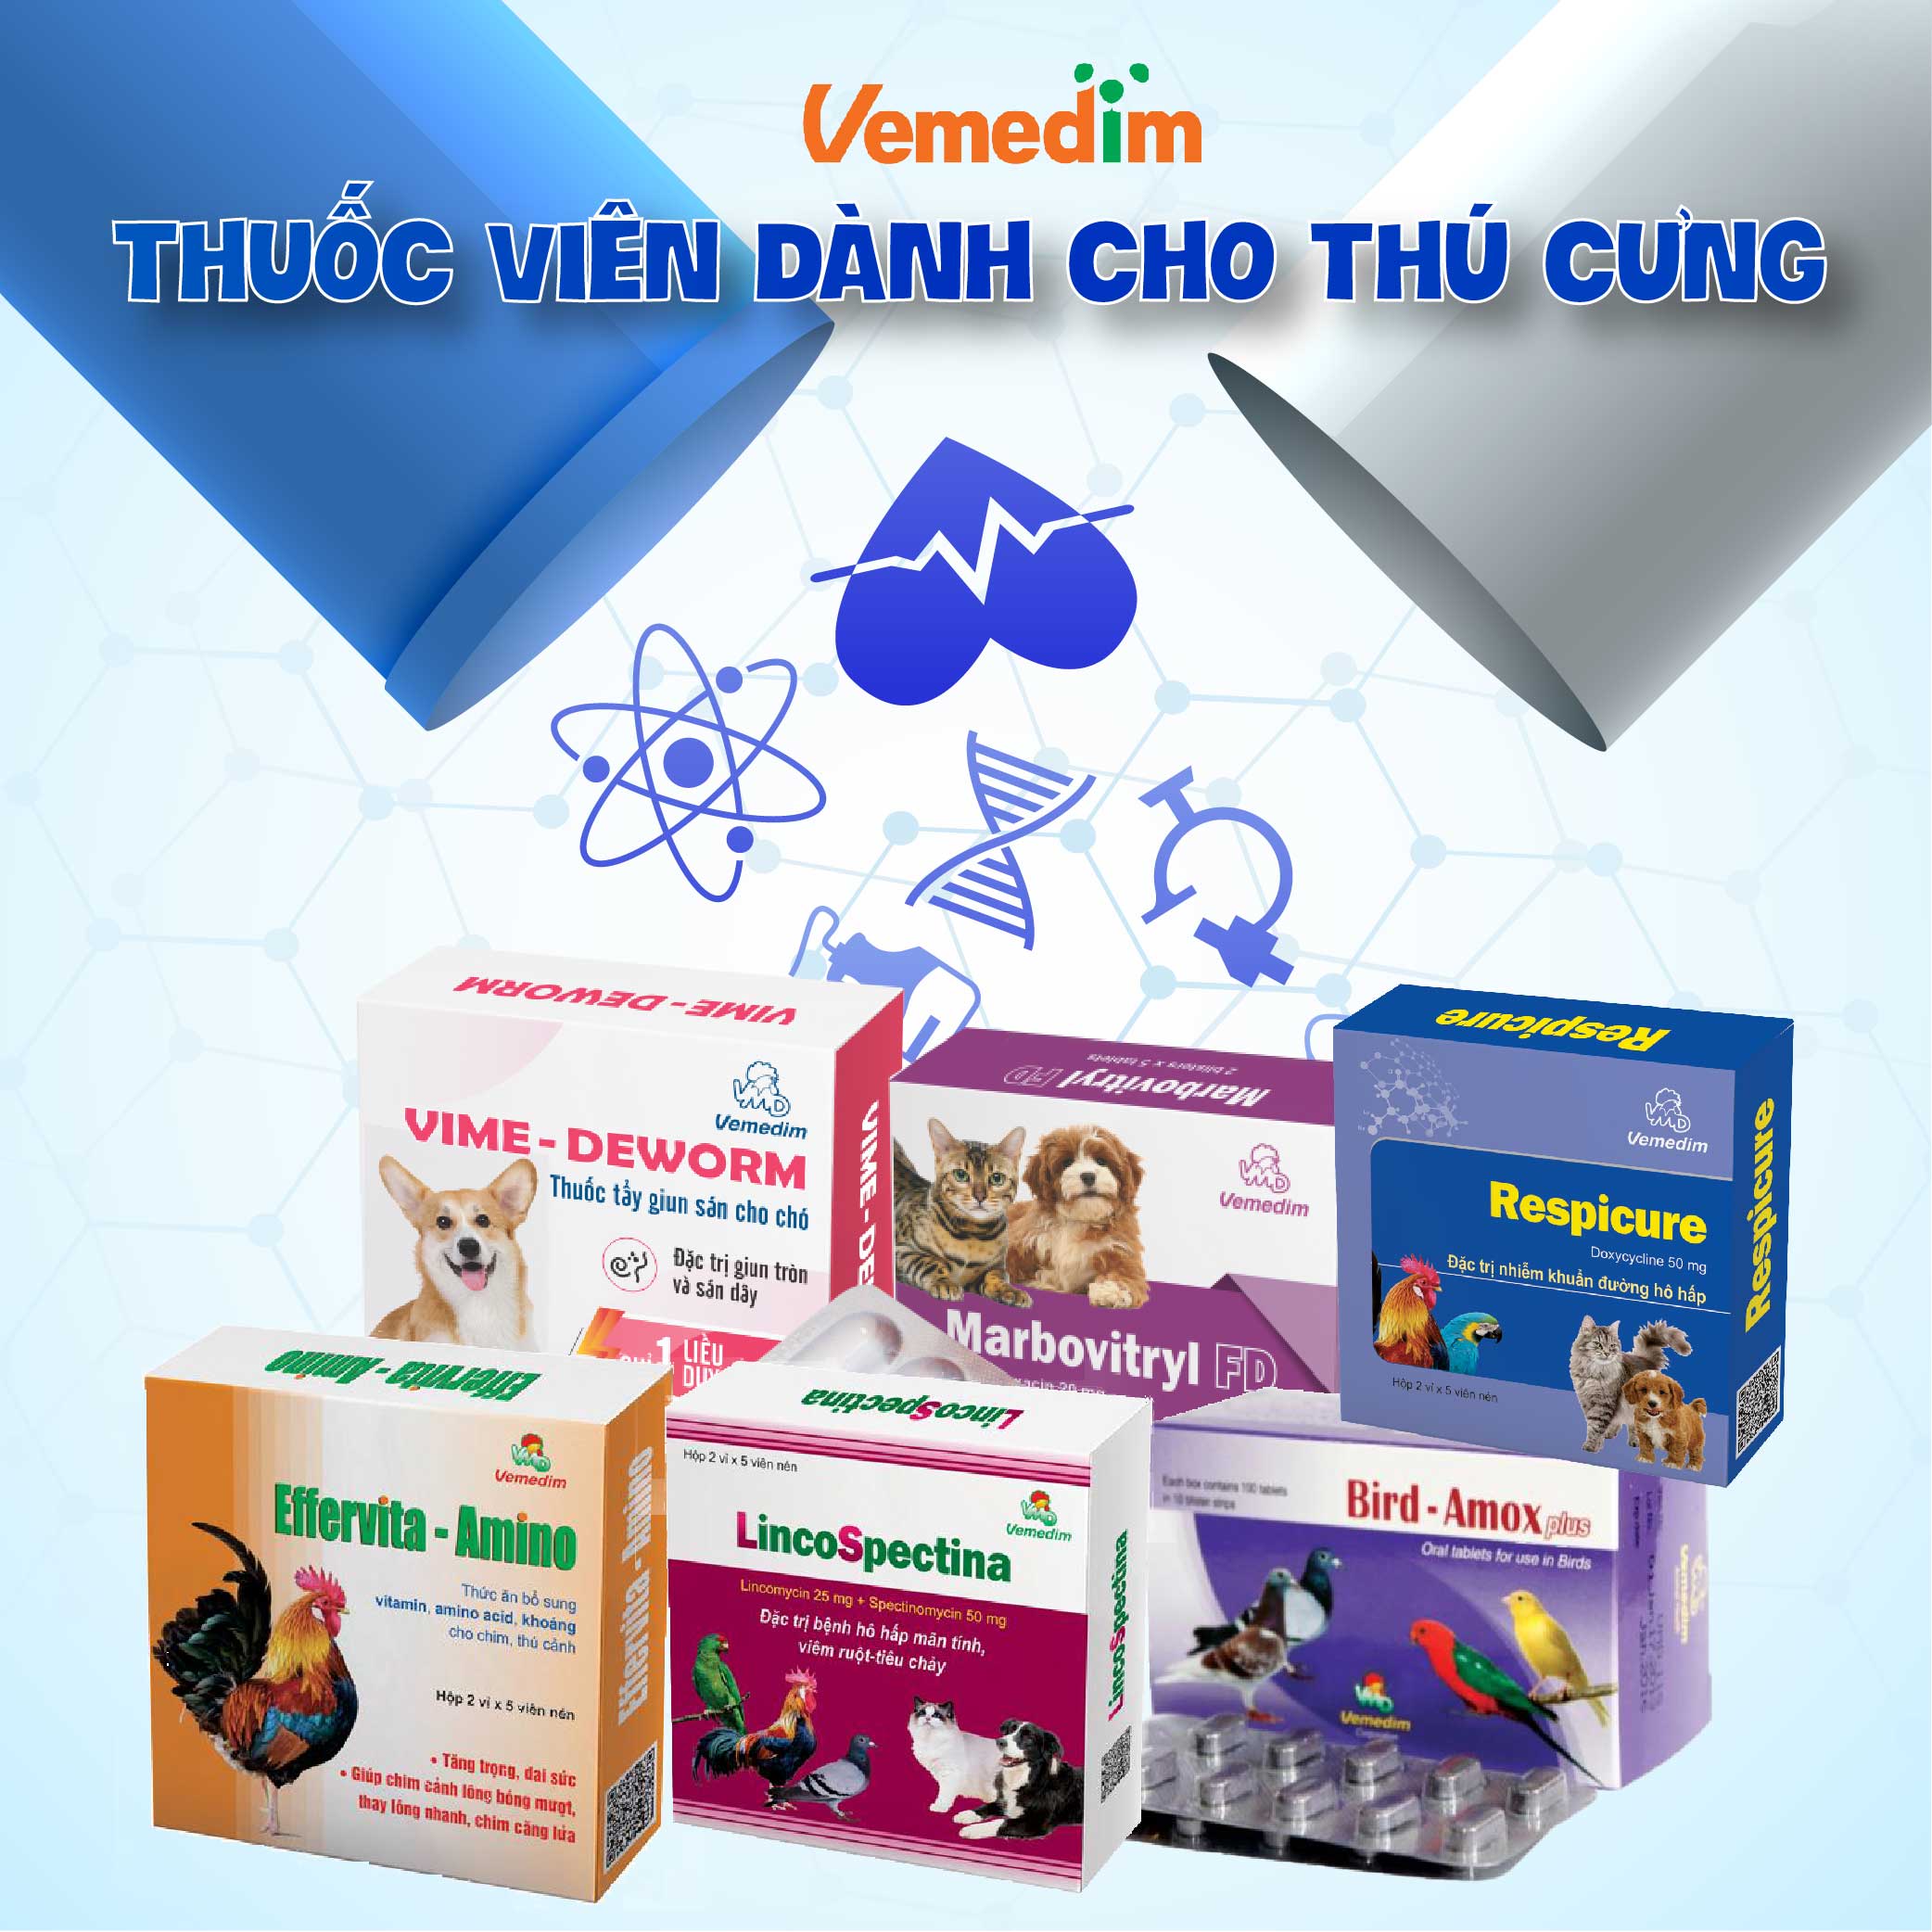 Respicure trị nhiễm khuẩn đường hô hấp trên chó, mèo, chai 60 viên, sản phẩm Vemedim